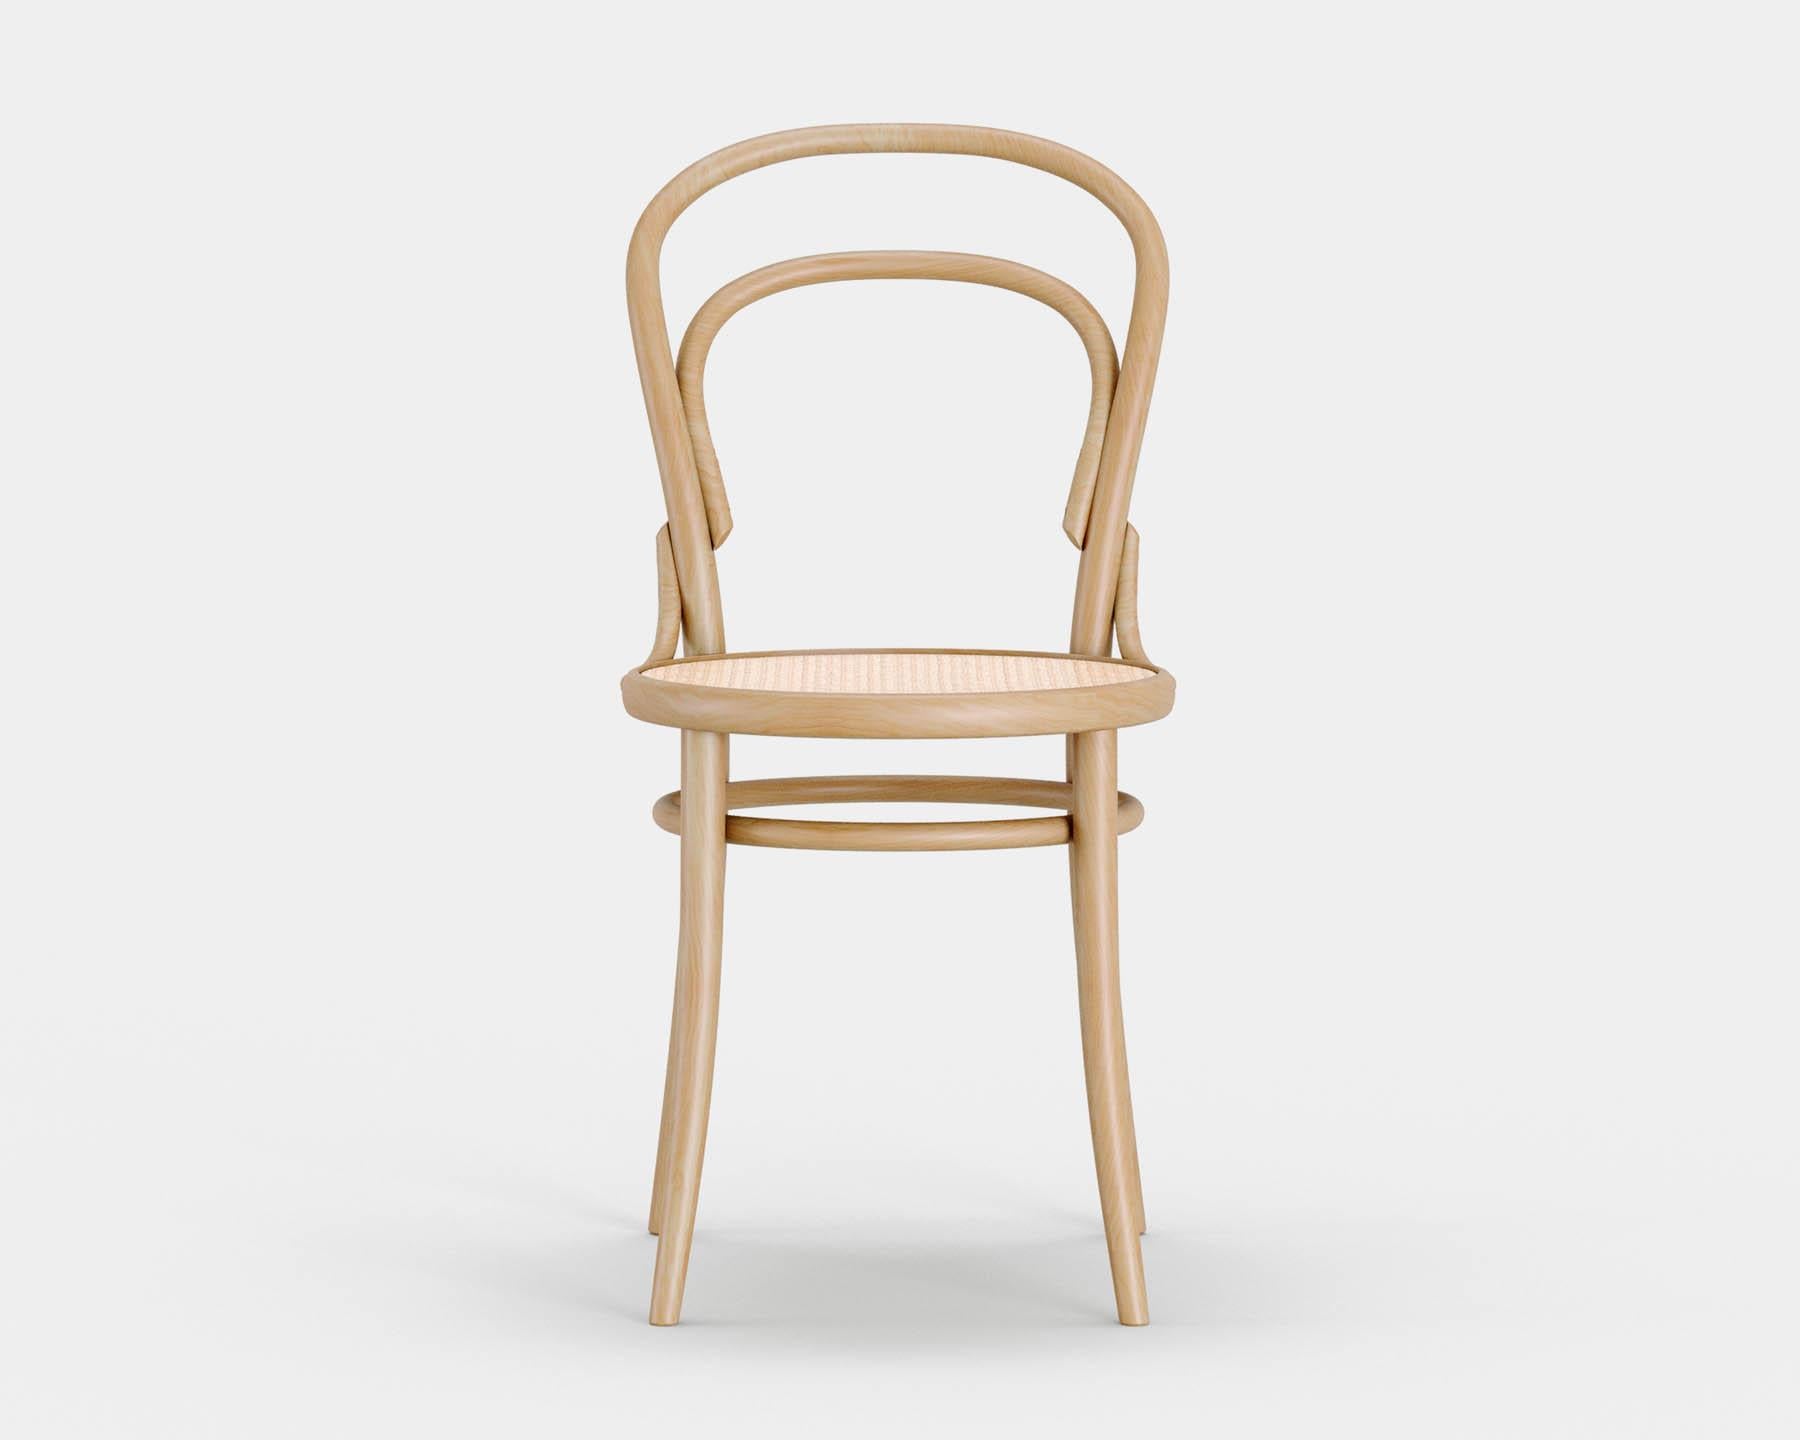 Stuhl Nr. 14
Der ikonische Bistrostuhl wurde 1869 von Michael Thonet entworfen und wird heute in der gleichen Manufaktur in der Tschechischen Republik von TON hergestellt. 

Holz: Buche massiv 
Ausführung: natürliches Licht 
Sitz: Can